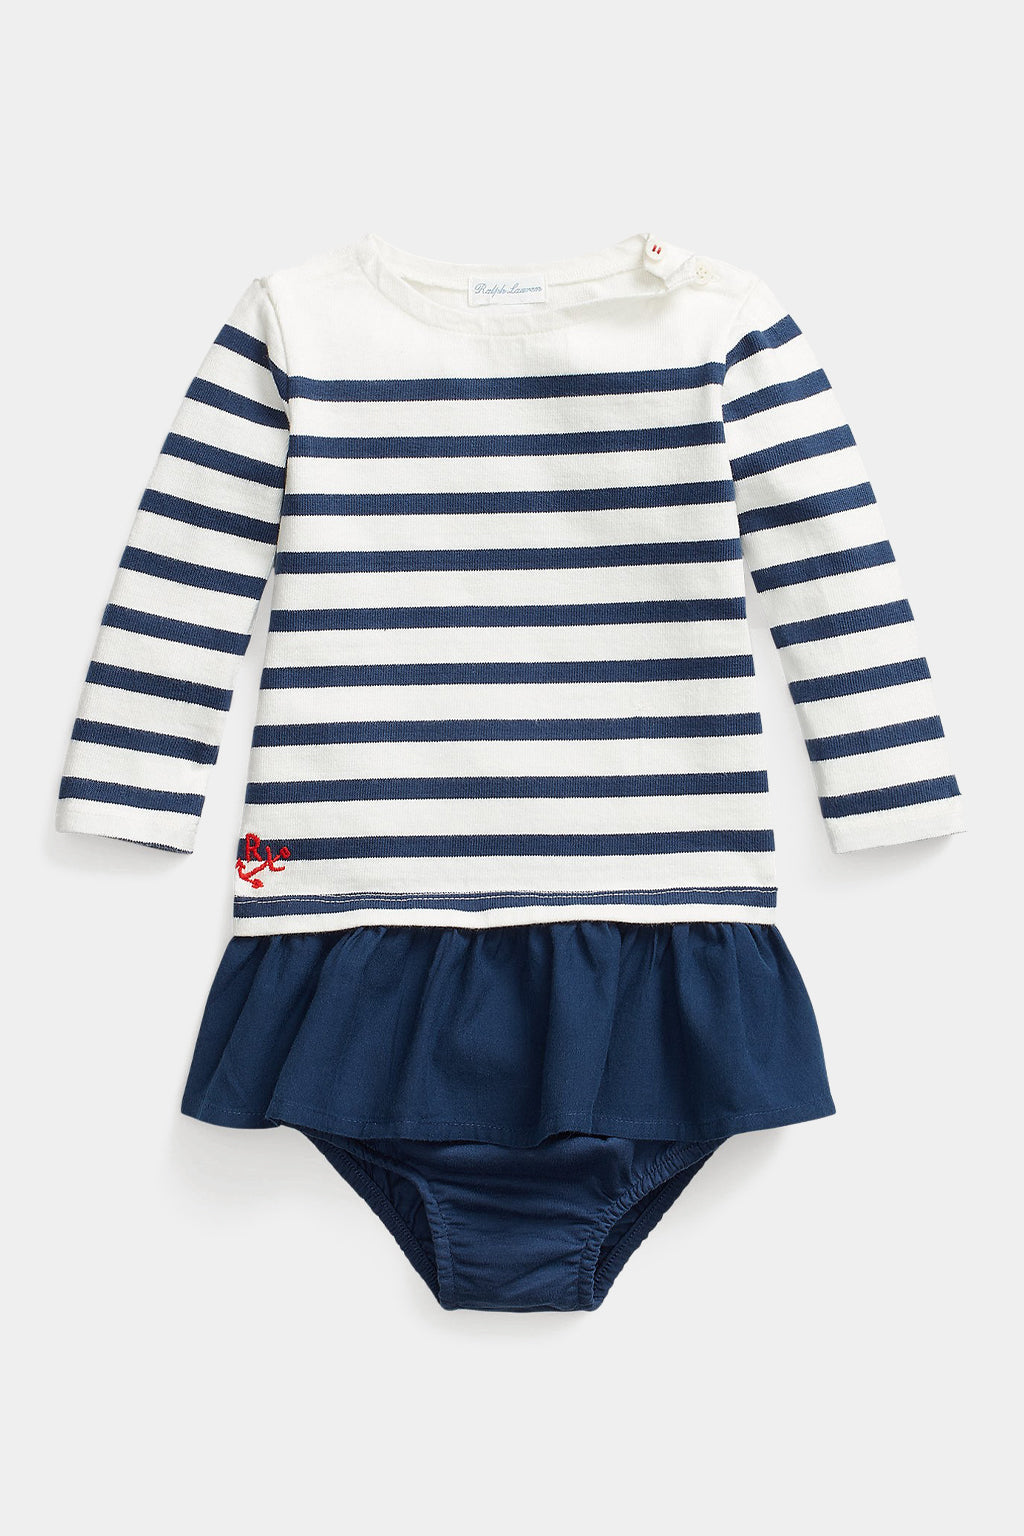 Ralph Lauren - Baby Girl Striped Cotton Jersey Dress & Bloomer